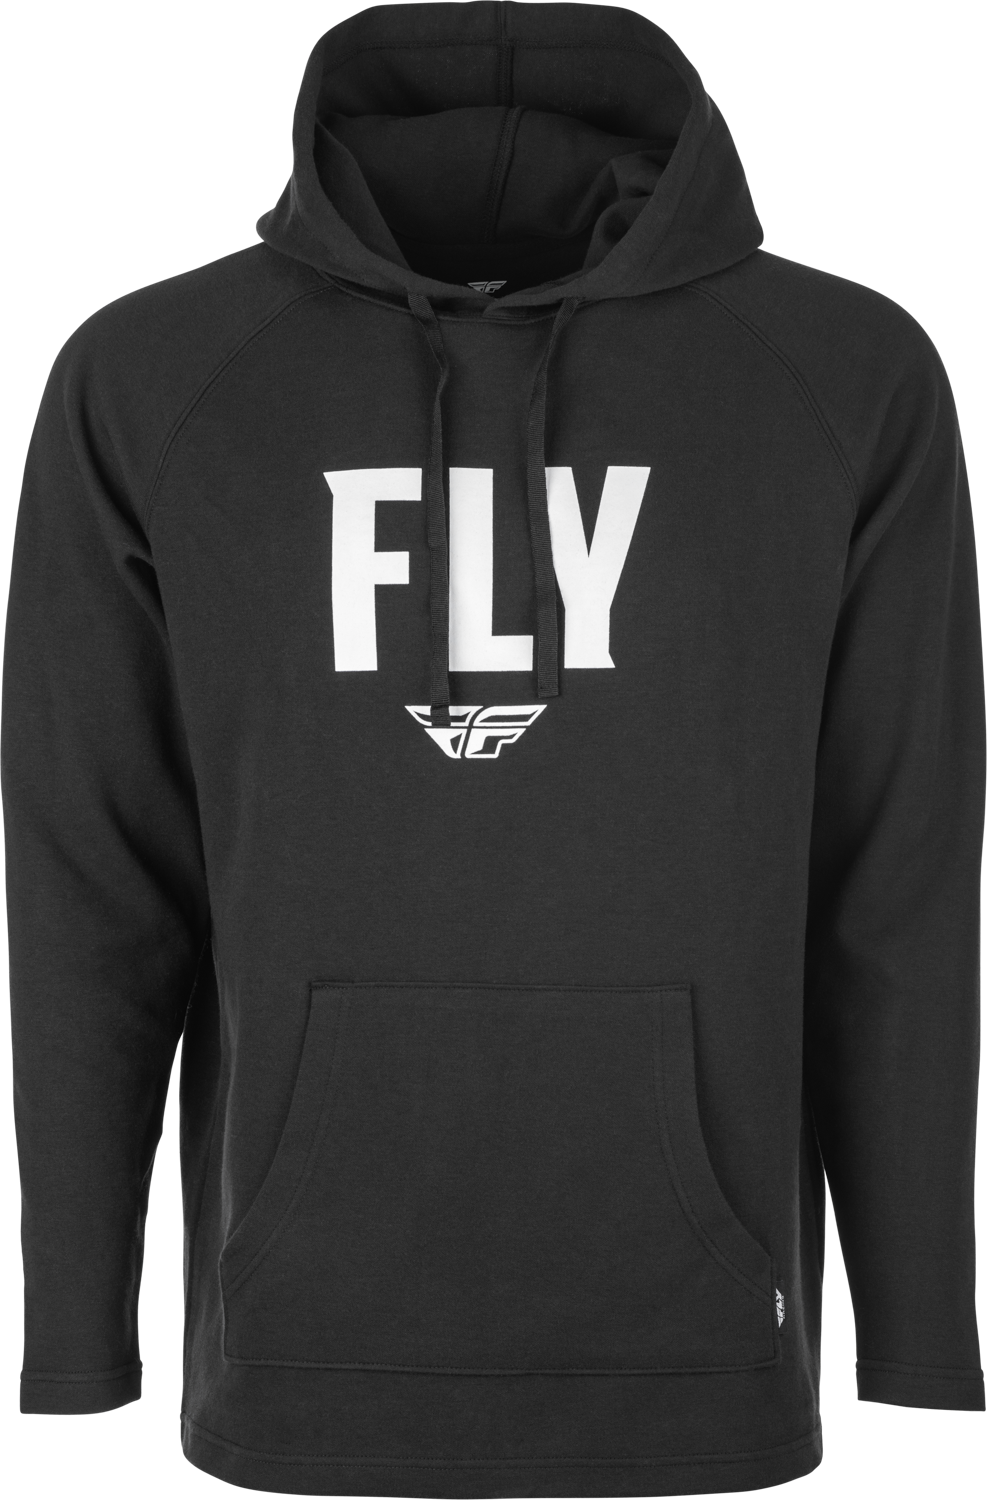 'Fly Racing' Men's Fly Weekender Pullover Hoodie - Black / White